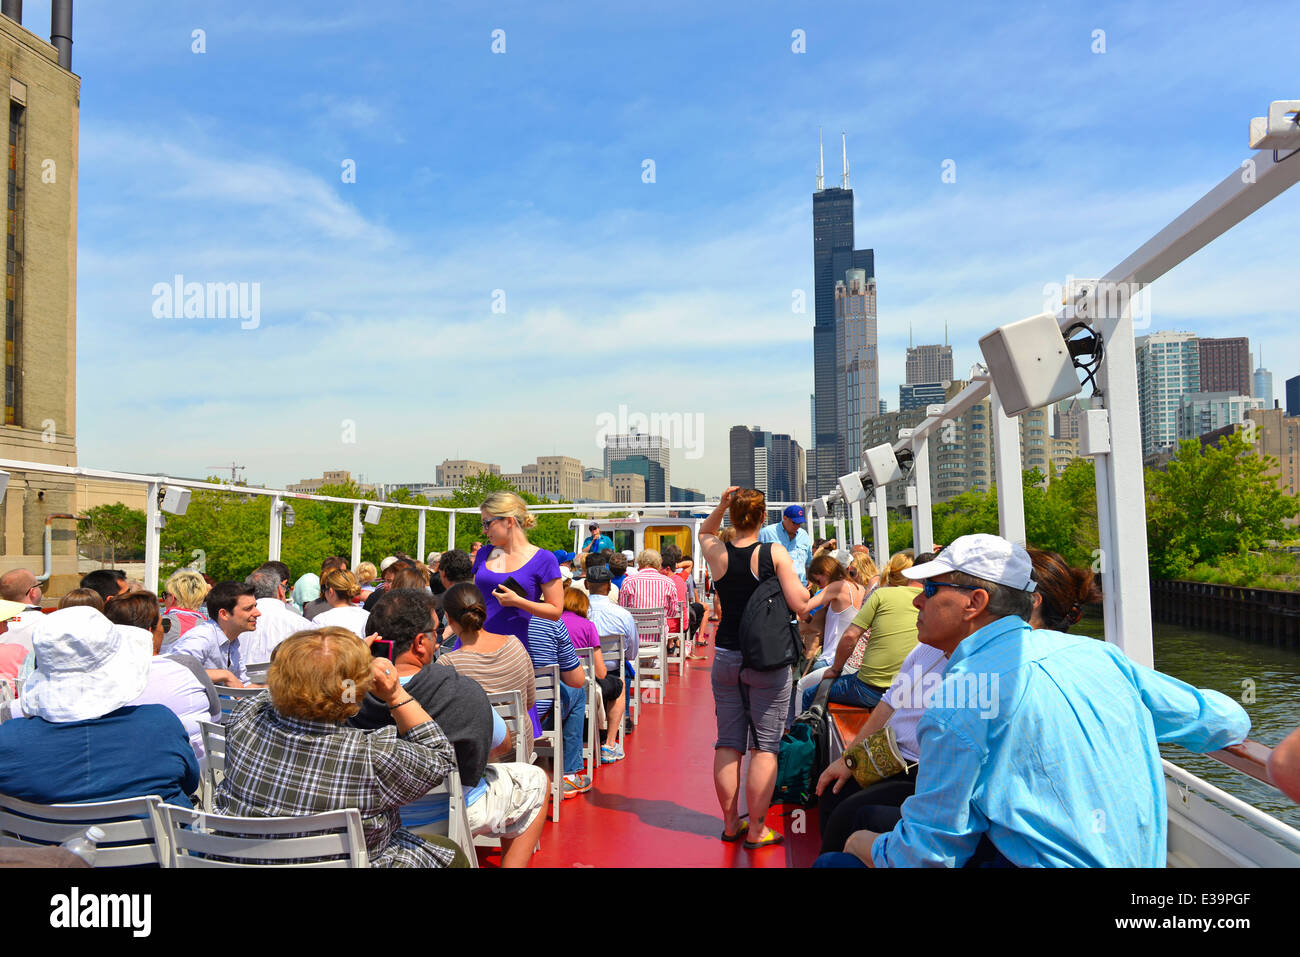 Bootsfahrt auf dem Chicago River, Stadtrundfahrt, Touristen genießen eine geführte Stadtrundfahrt Sightseeing; Chicago, Illinois, USA Stockfoto